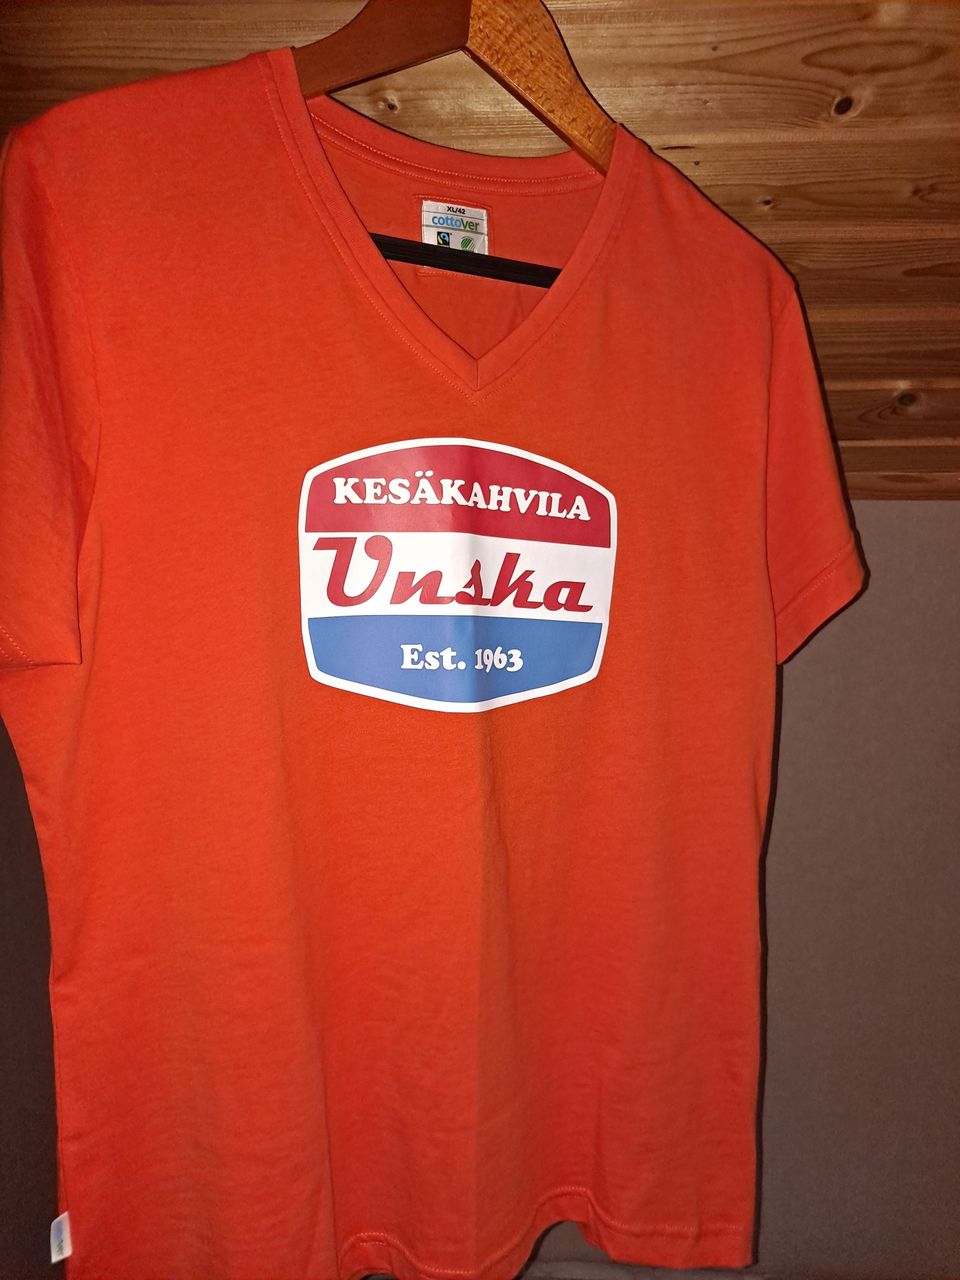 Union huoltoasema, "Unska" T-paita Est. 1963